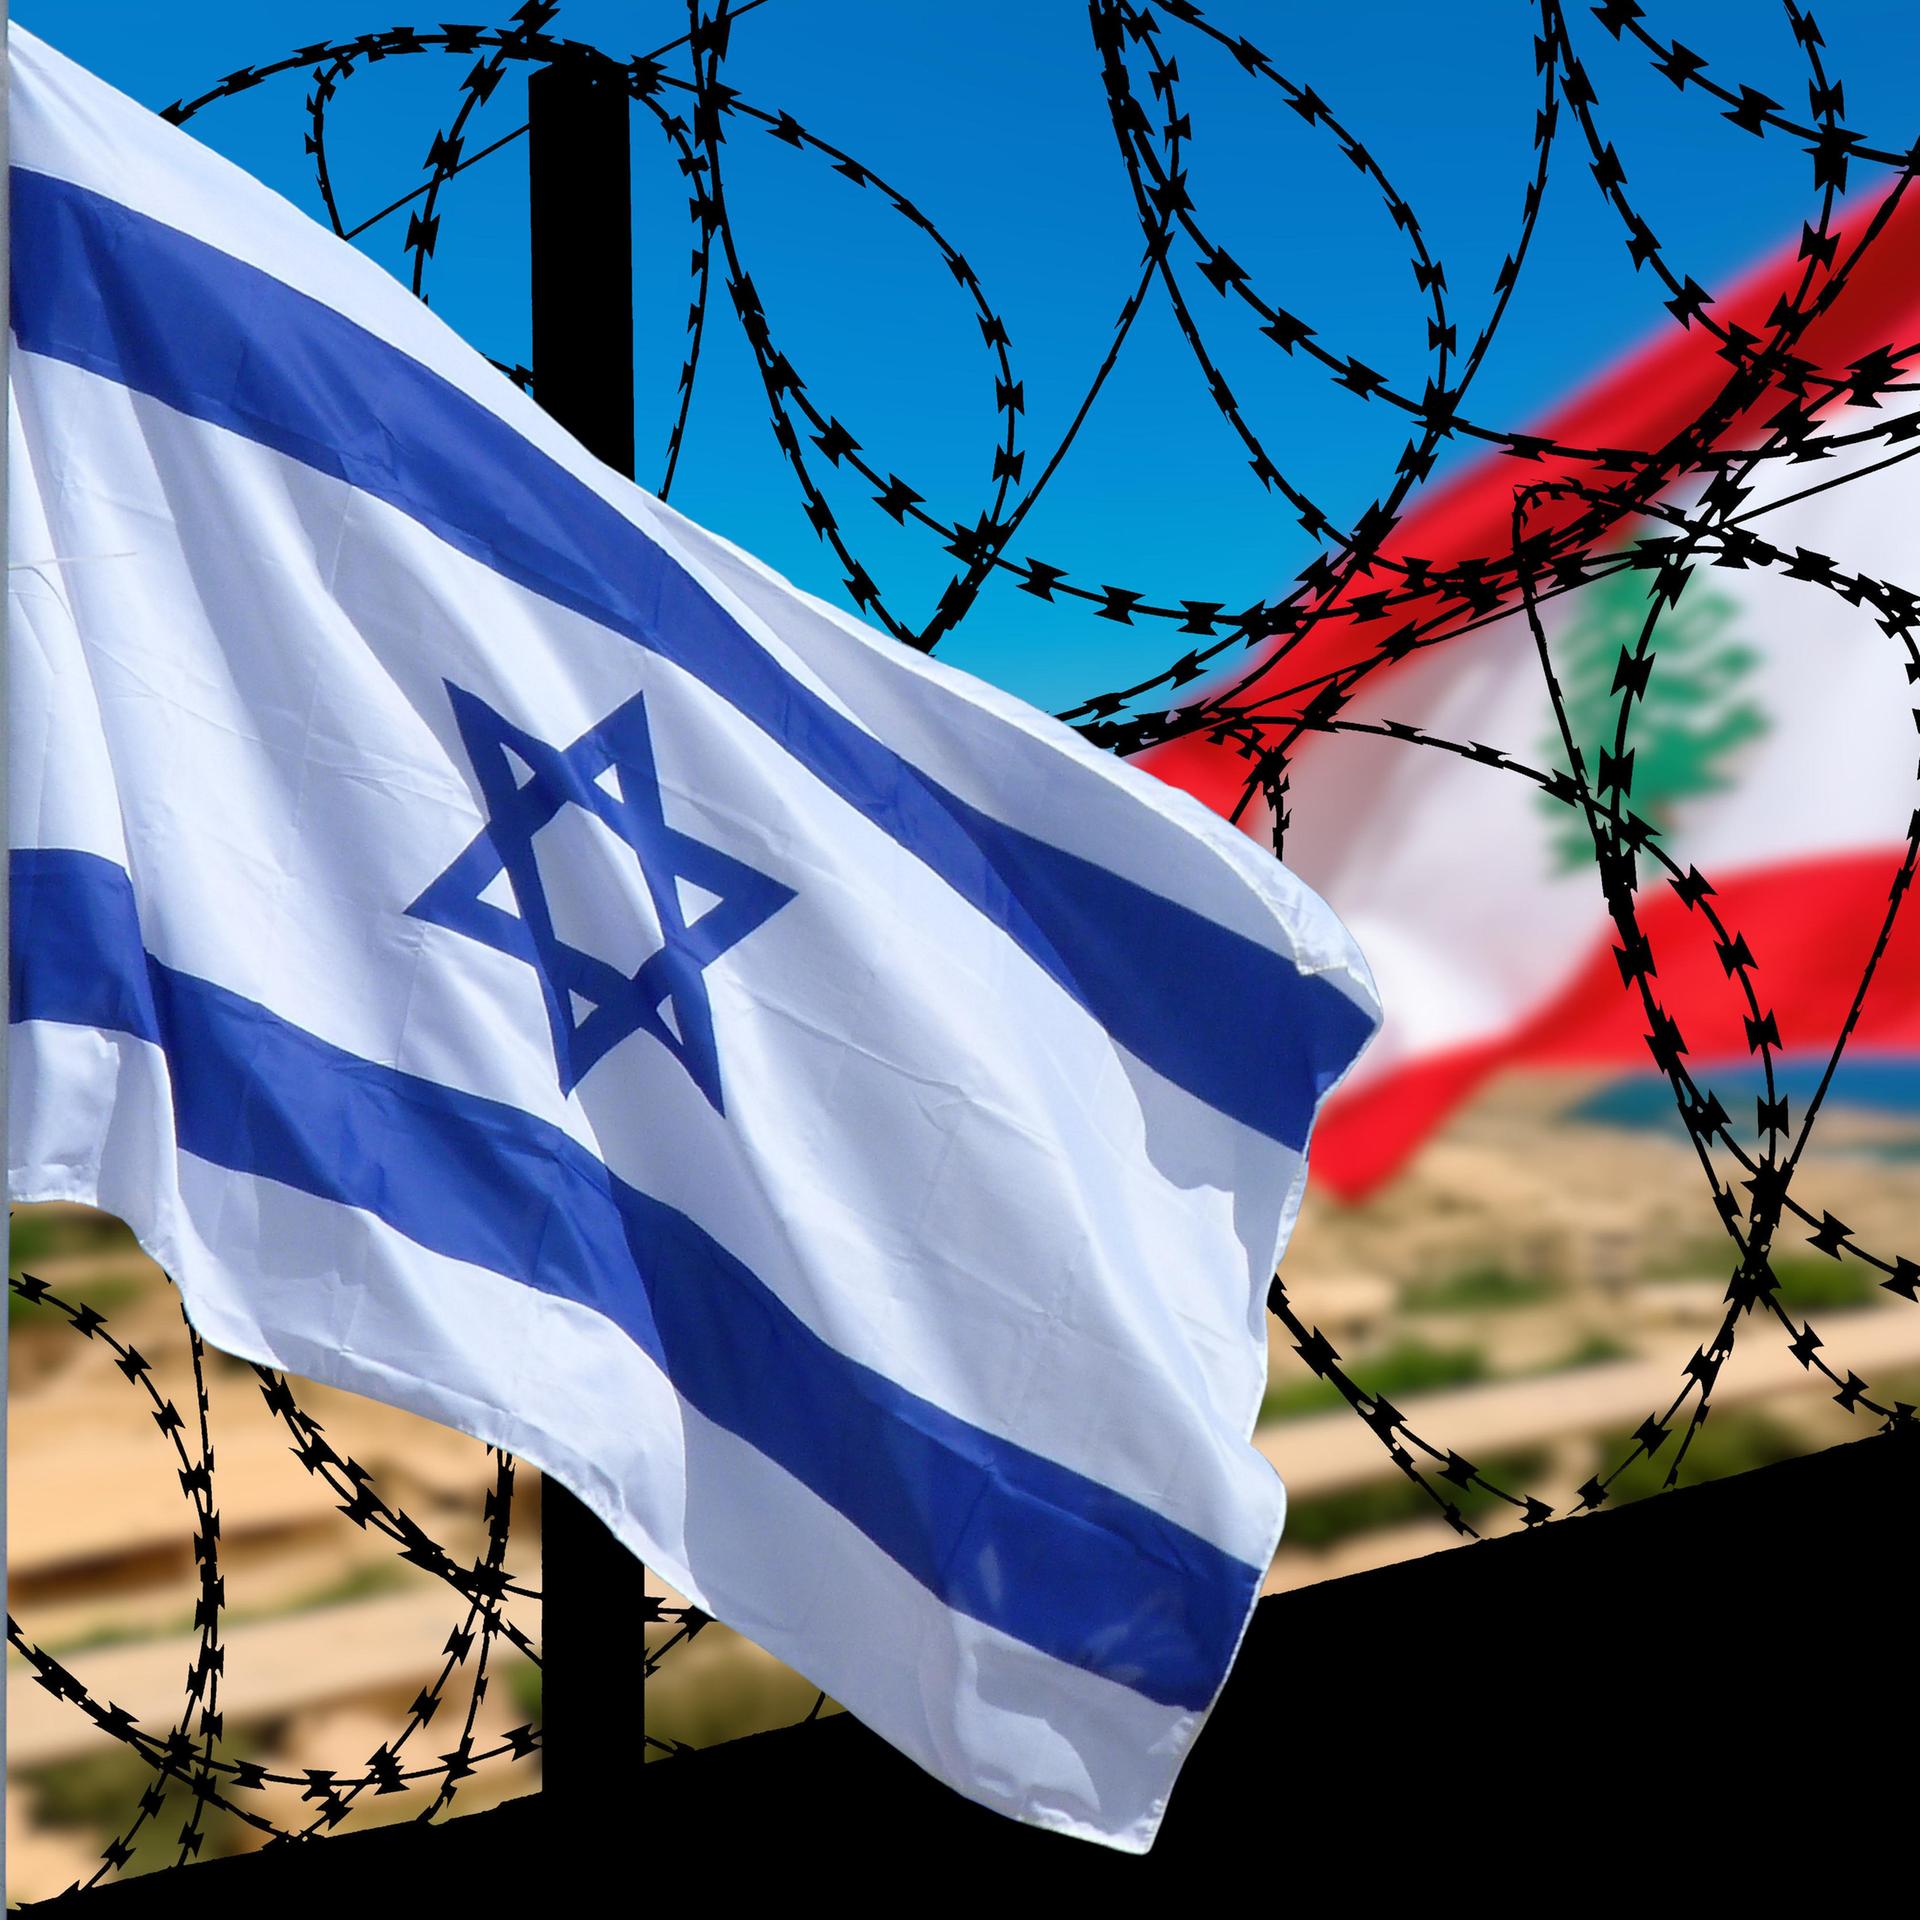 Gefechte zwischen Hisbollah und Israel - Die Sorge vor dem ganz großen Krieg